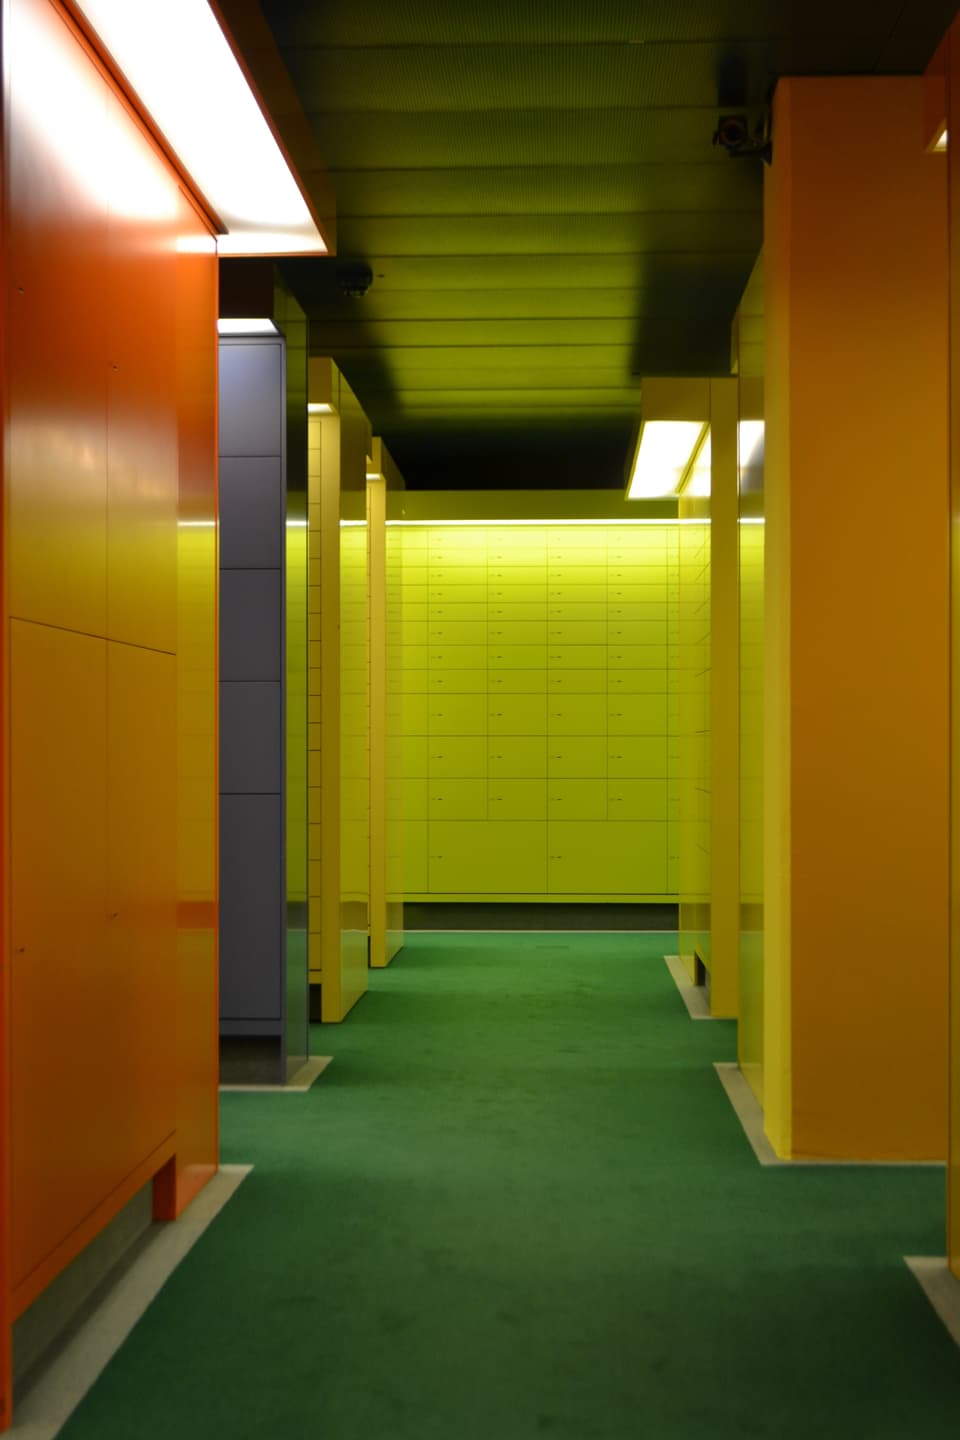 Ein Gang mit grünem Teppich, daneben orangefarbene Wände, am Ende des Gangessind Tresorfächer sichtbar.